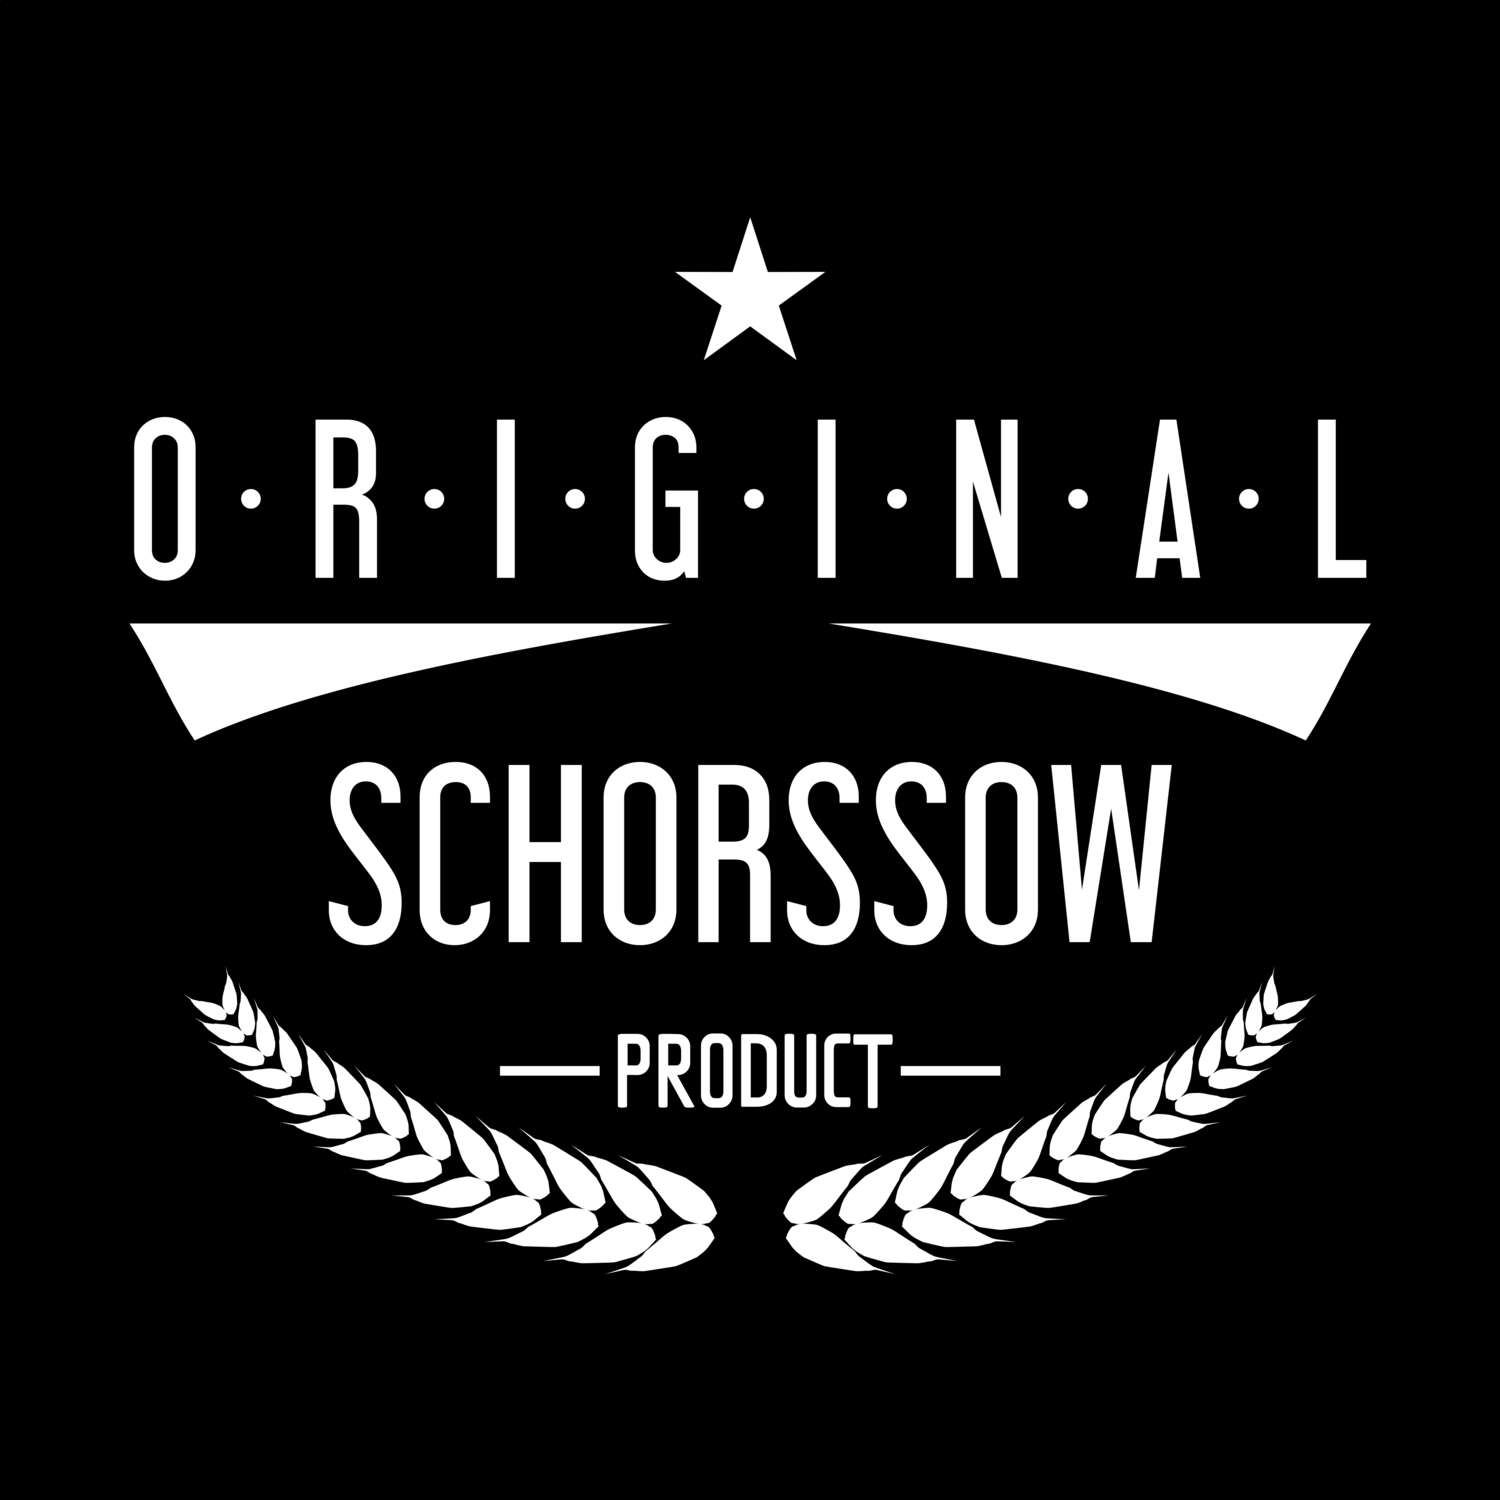 Schorssow T-Shirt »Original Product«